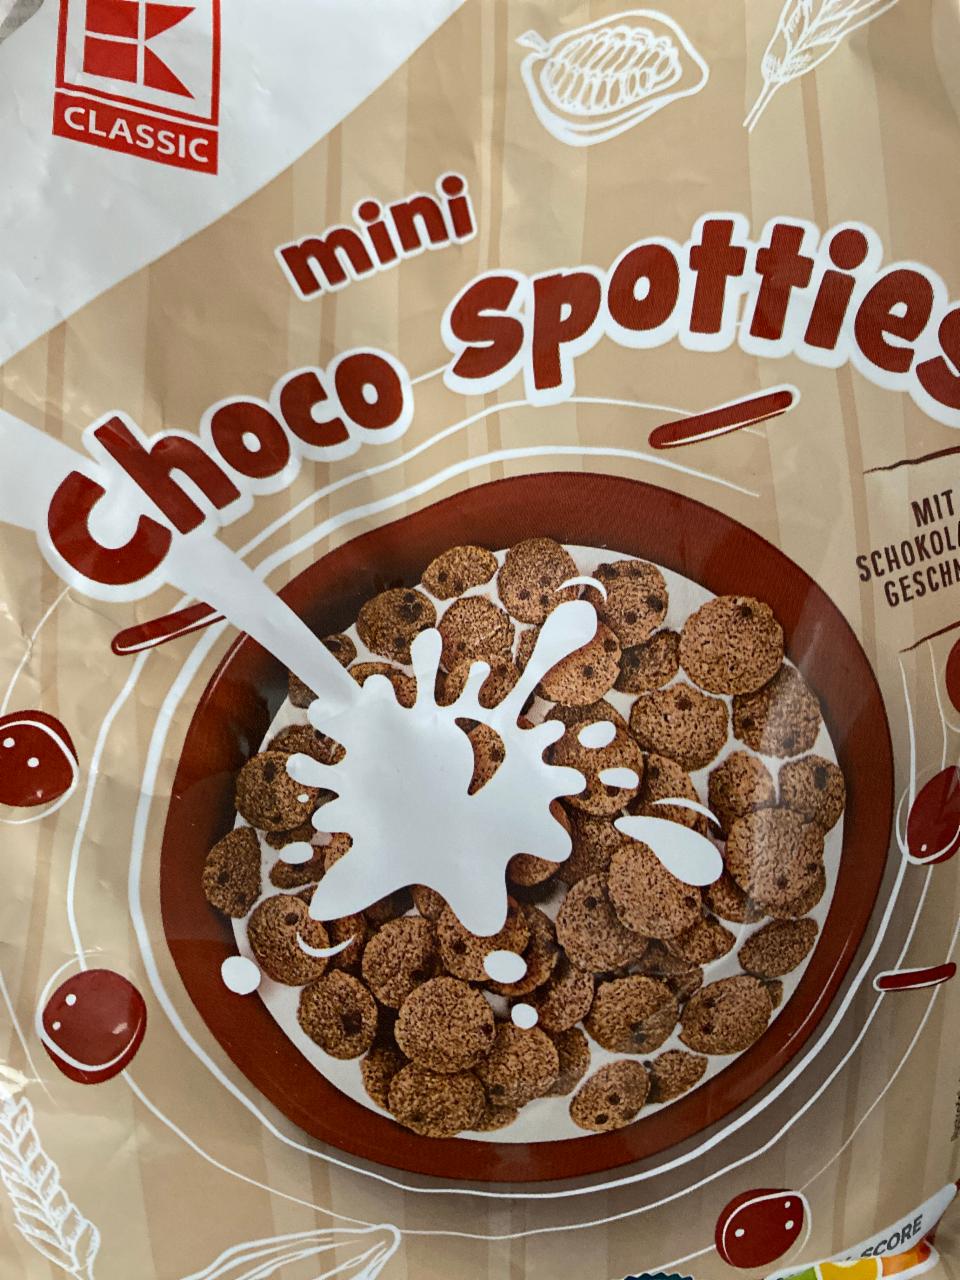 Фото - Пластівці Mini Choco Spotties K-Classic